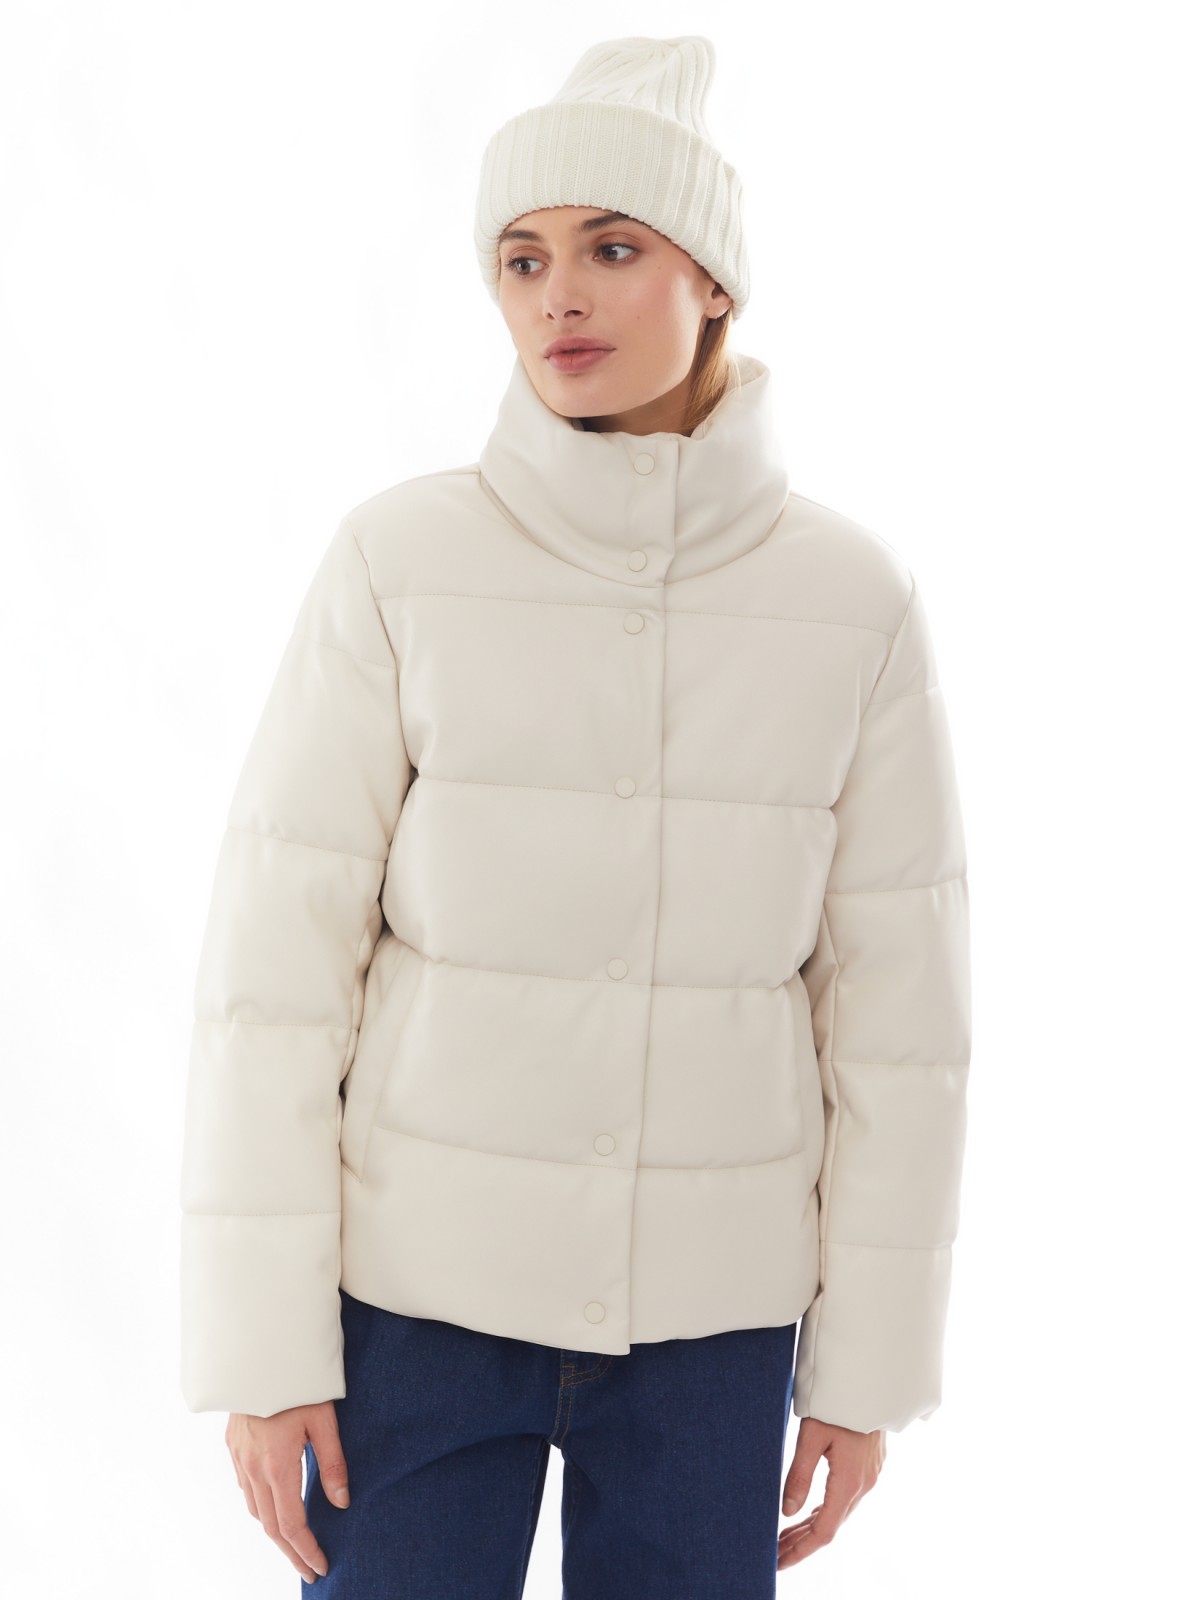 Тёплая стёганая дутая куртка из экокожи с высоким воротником zolla 02412516F044, цвет молоко, размер XS - фото 4